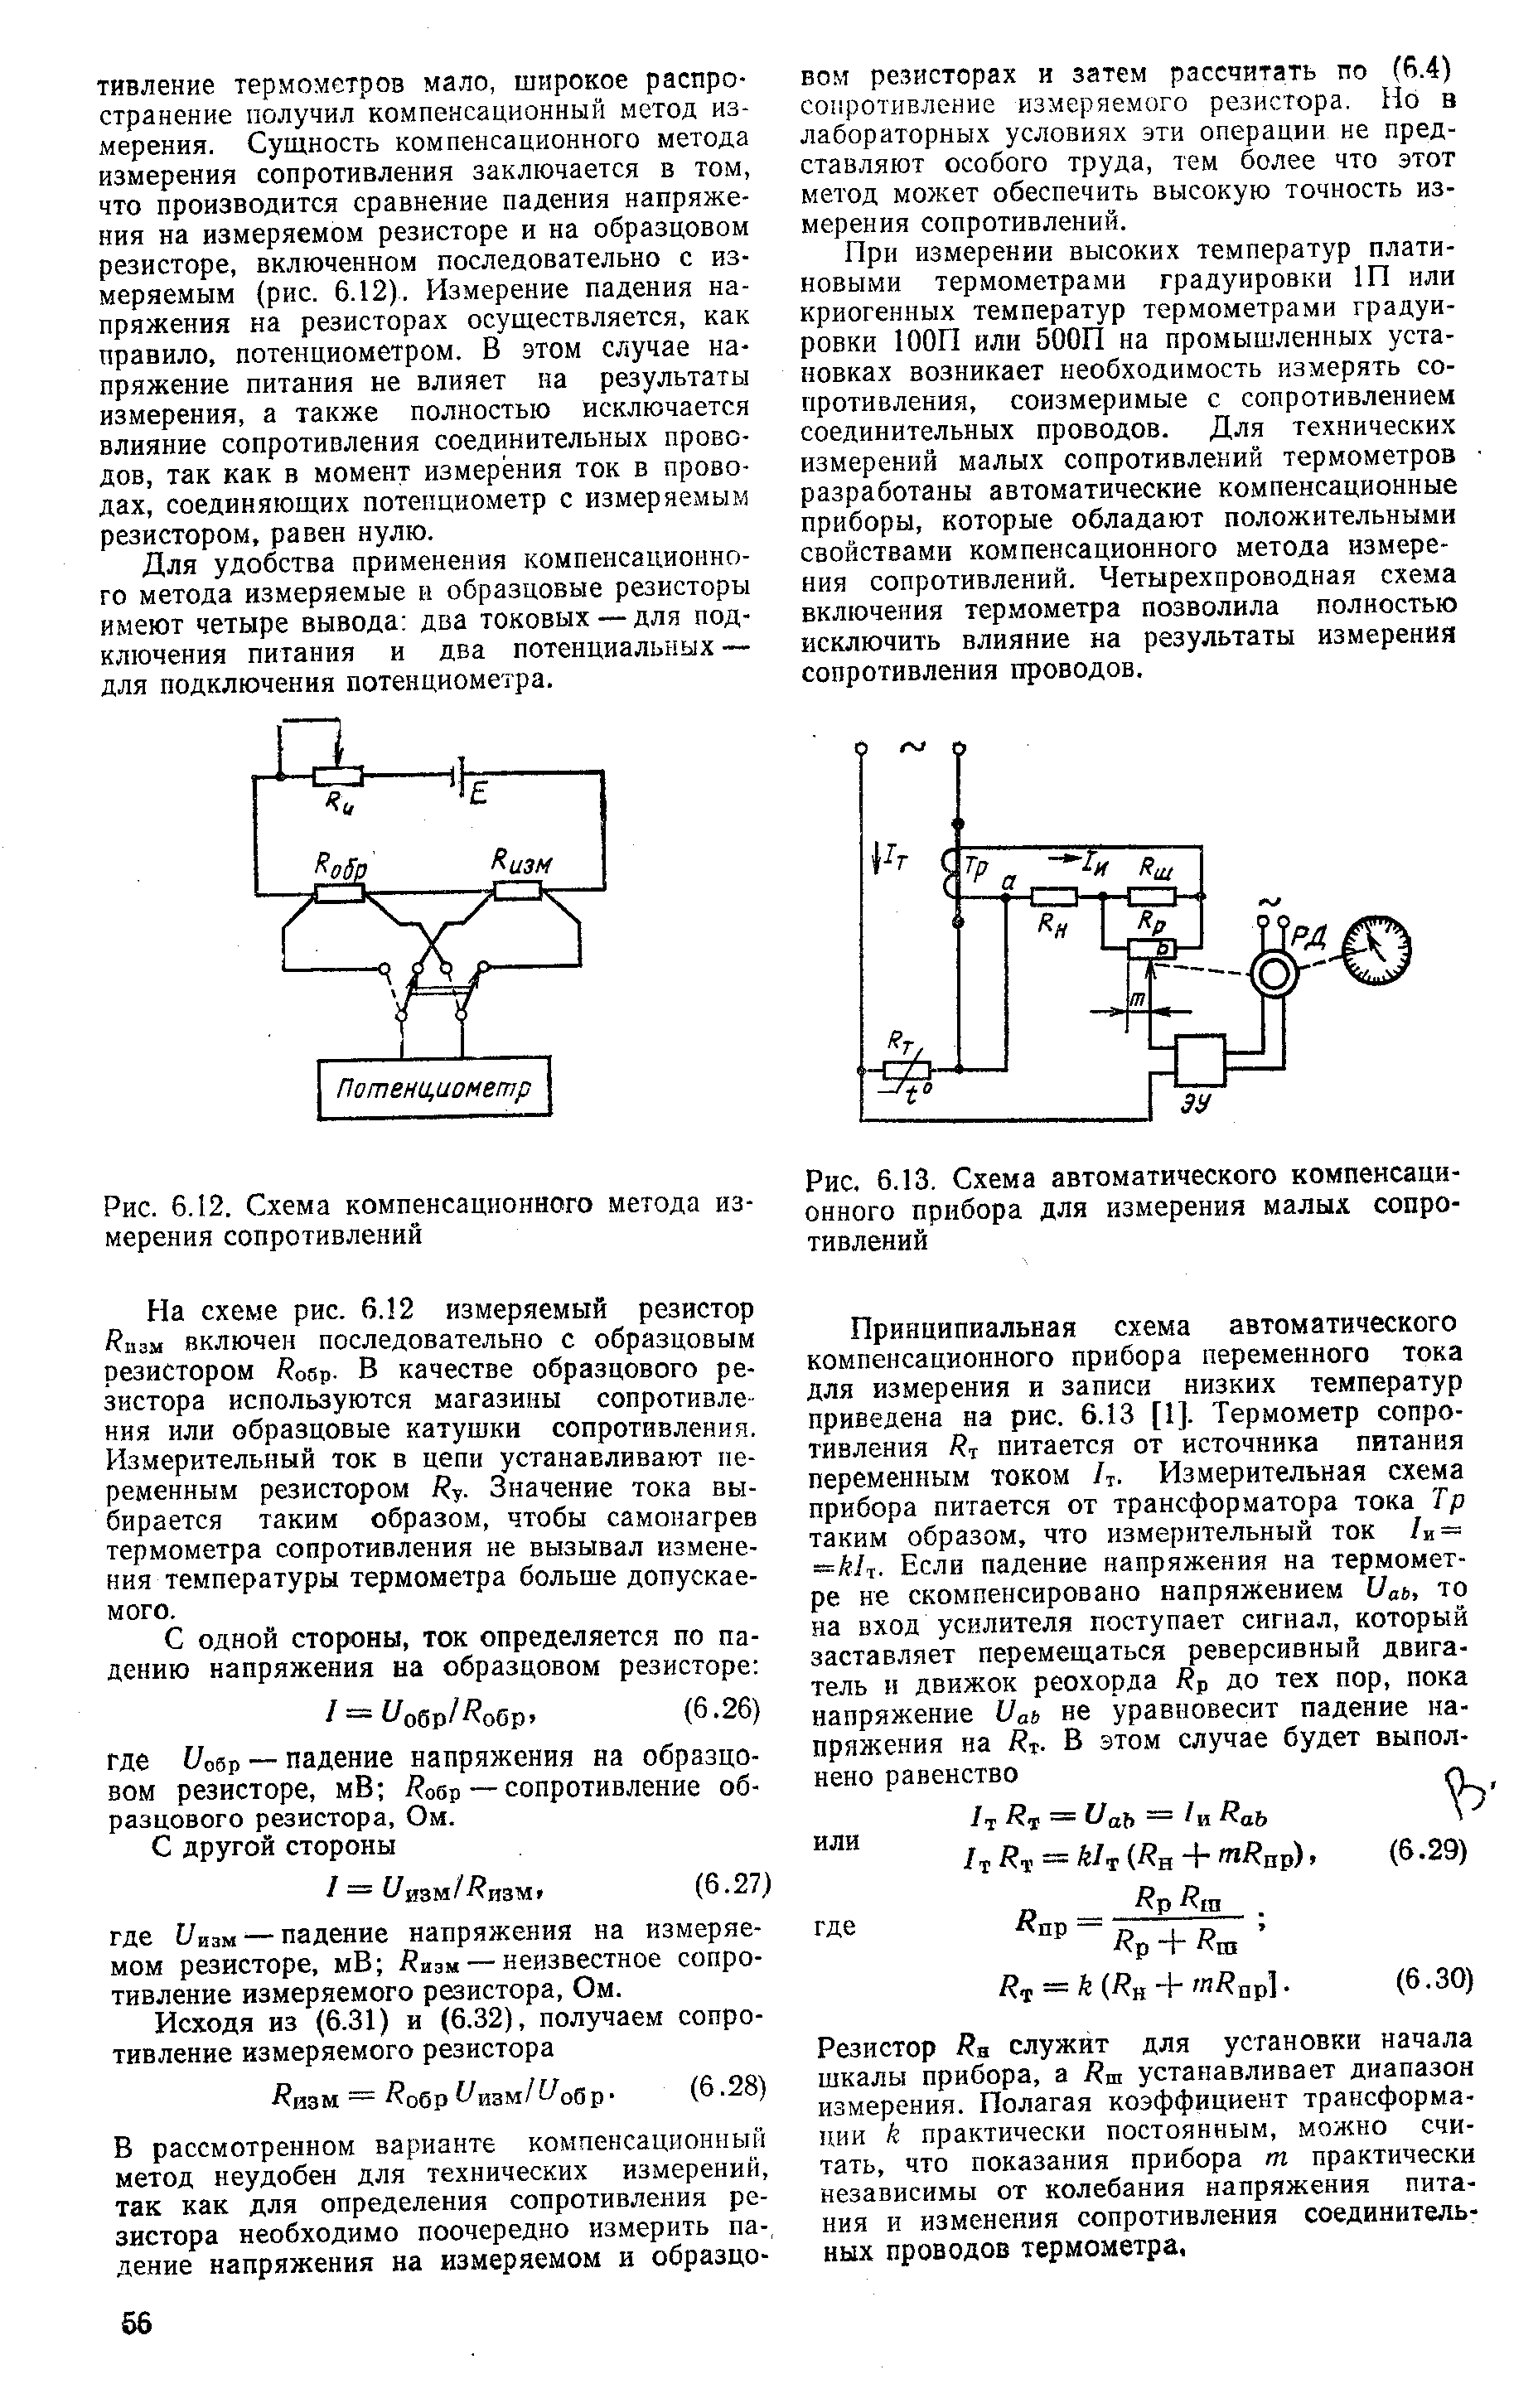 Рис. 6.13, Схема автоматического компенсационного прибора для измерения малых сопротивлений
